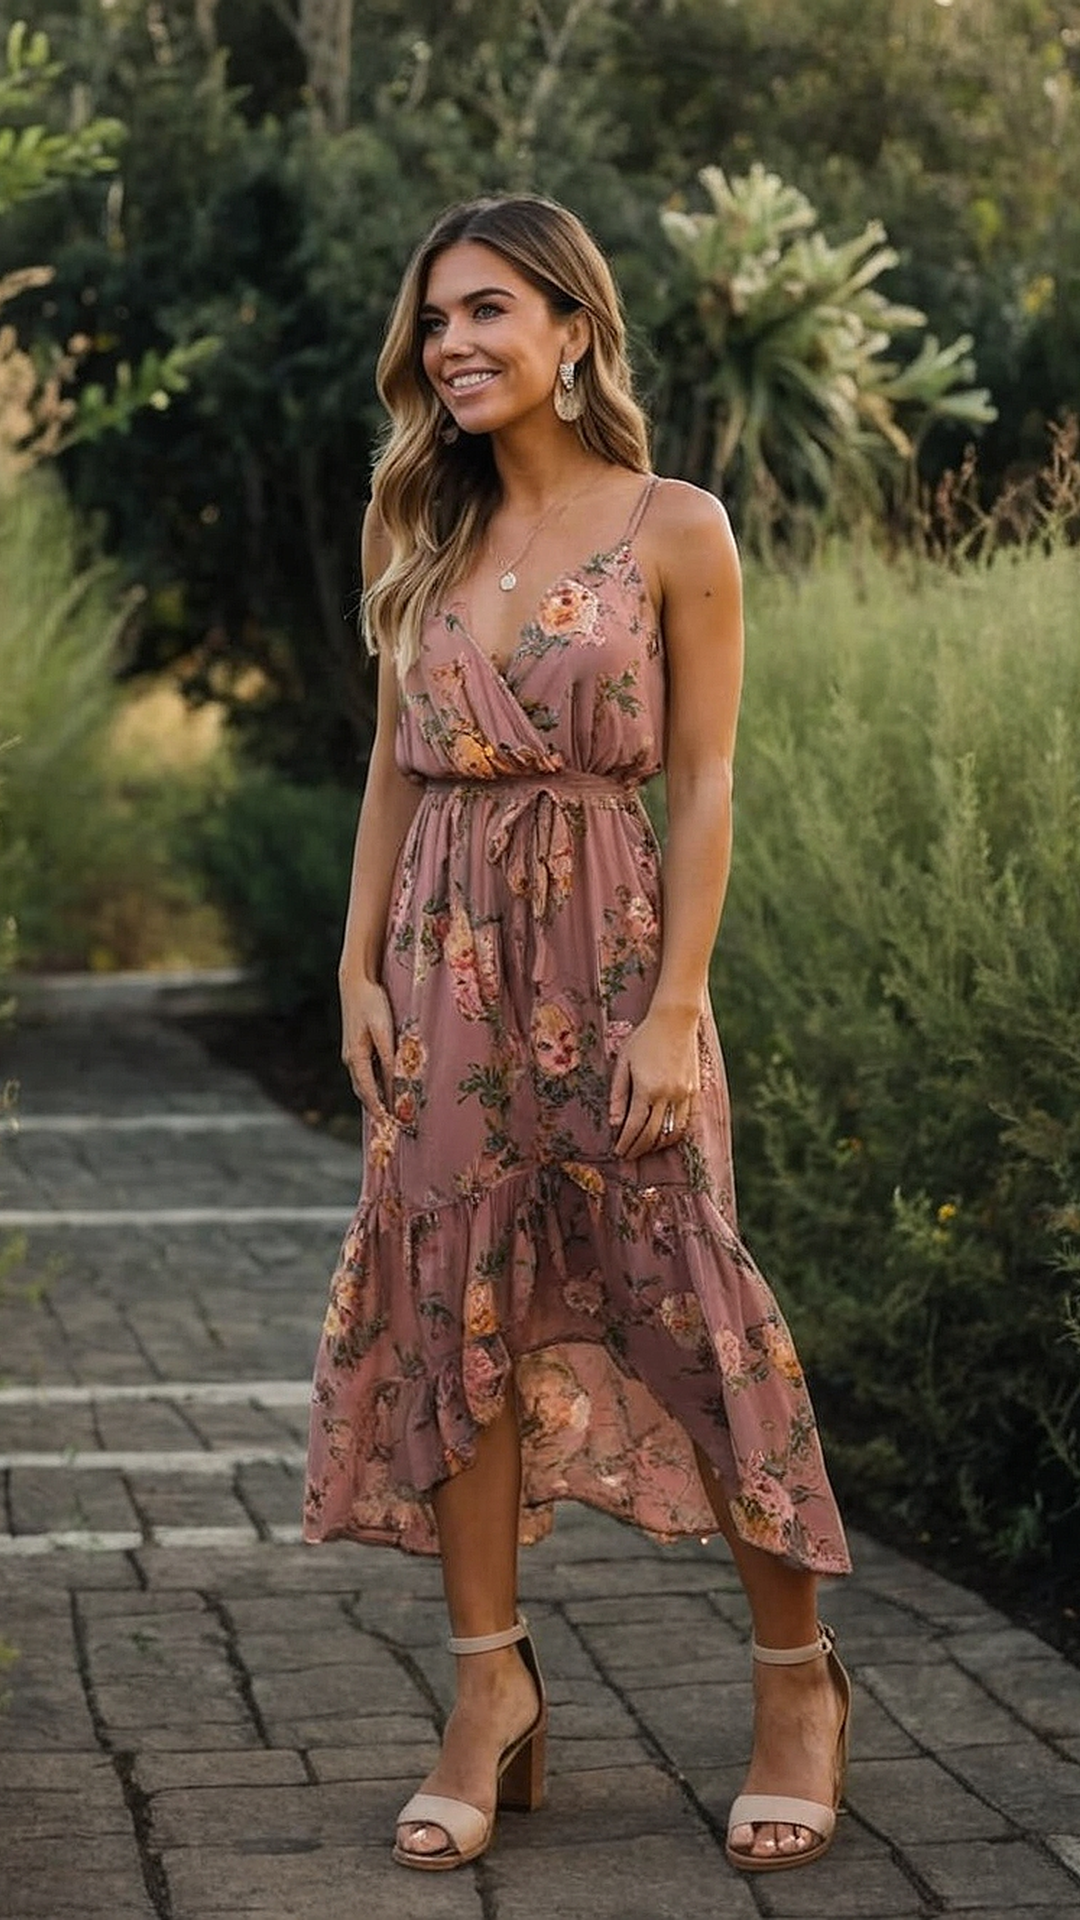 Nature's Finest: Exquisite Floral Maxi Dress Picks